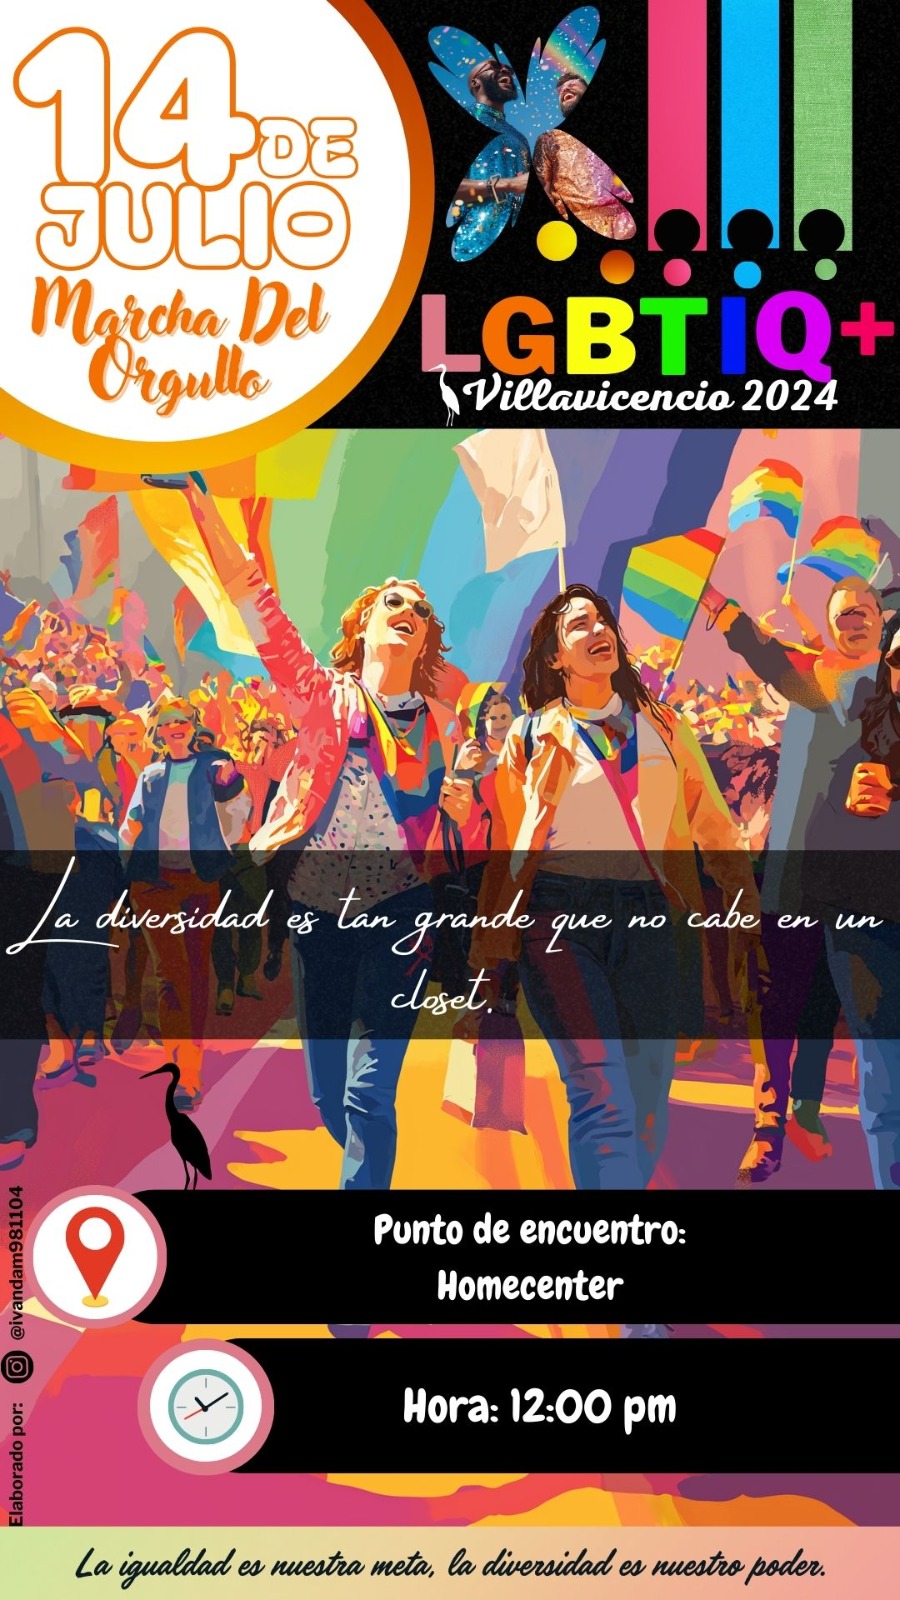  13 Marcha de la Ciudadana LGBTI Villavicencio 2024 [VILLAVICENCIO]